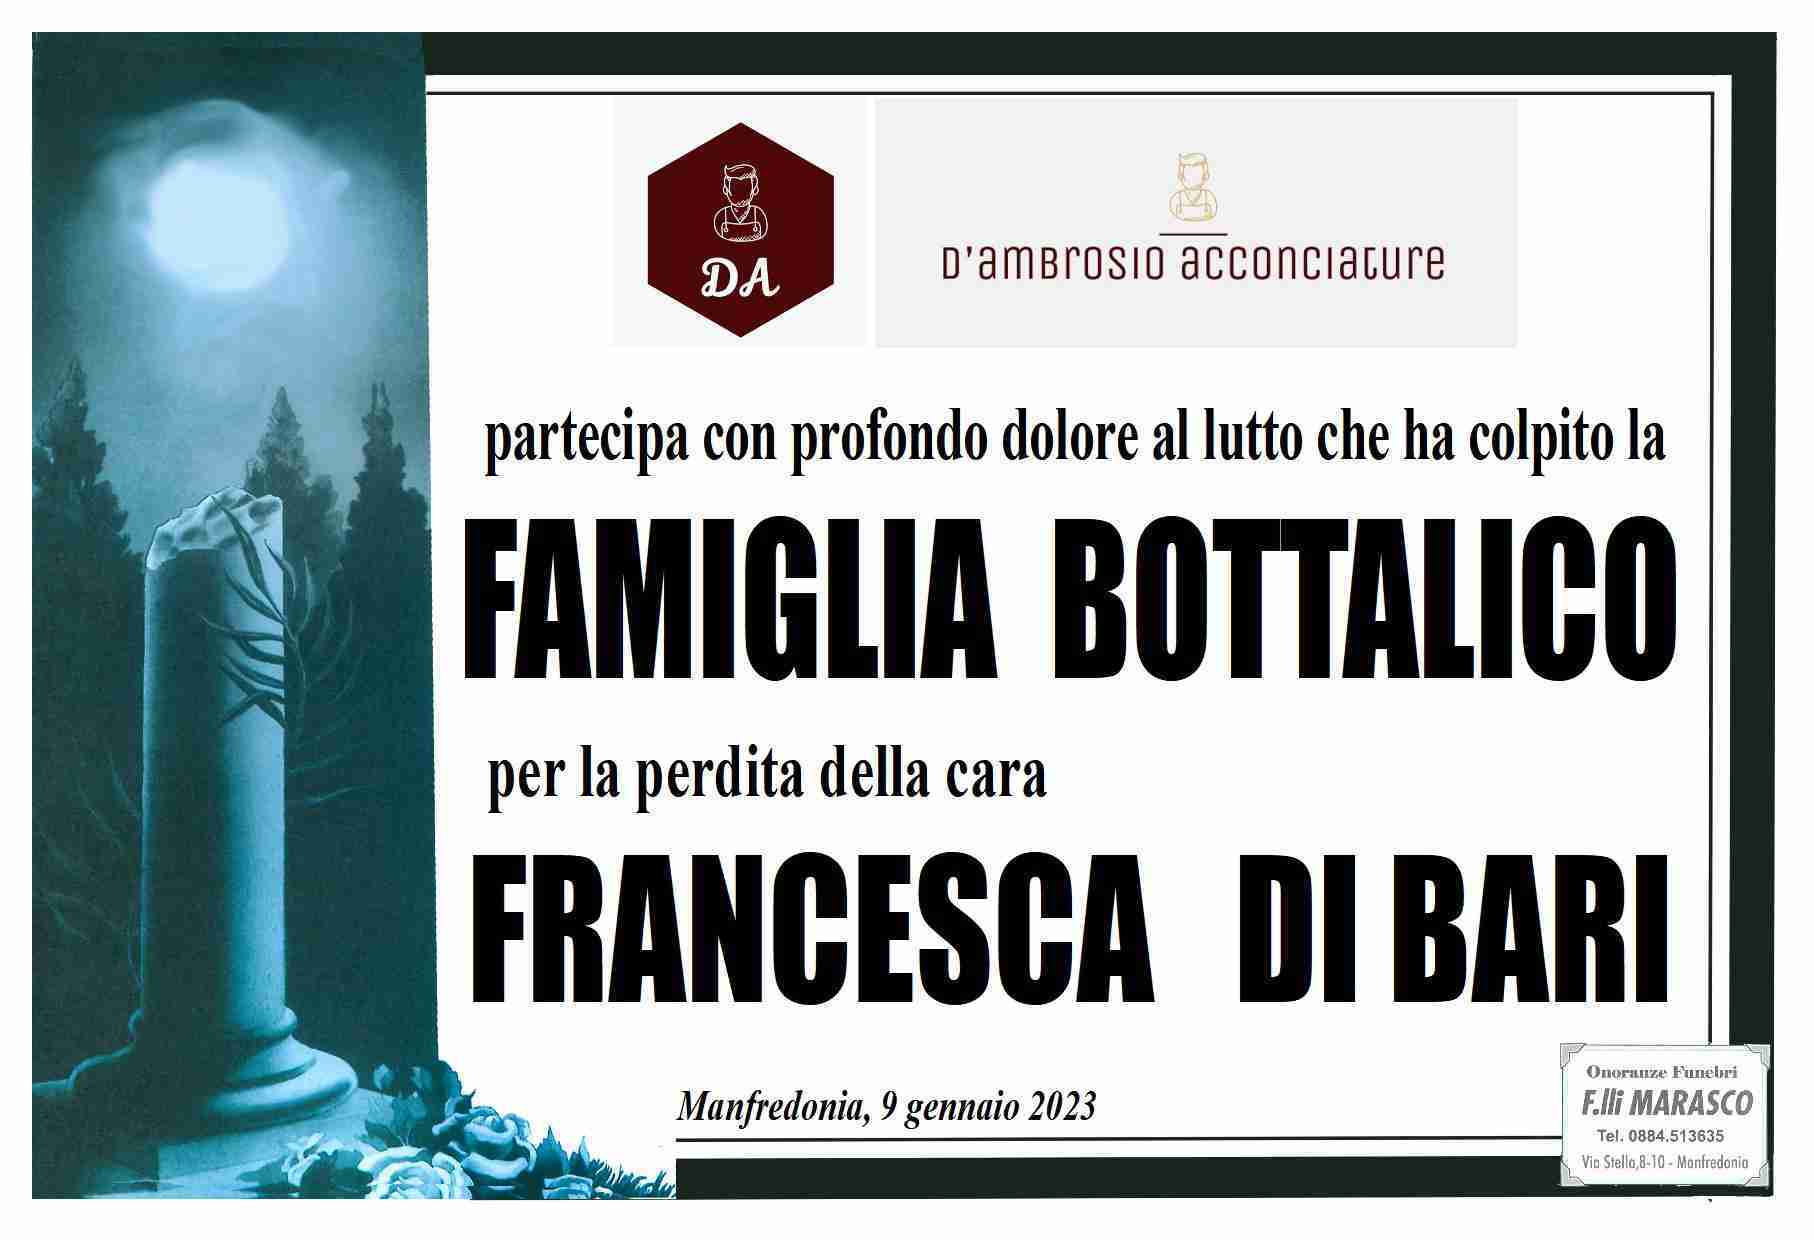 Francesca Di Bari